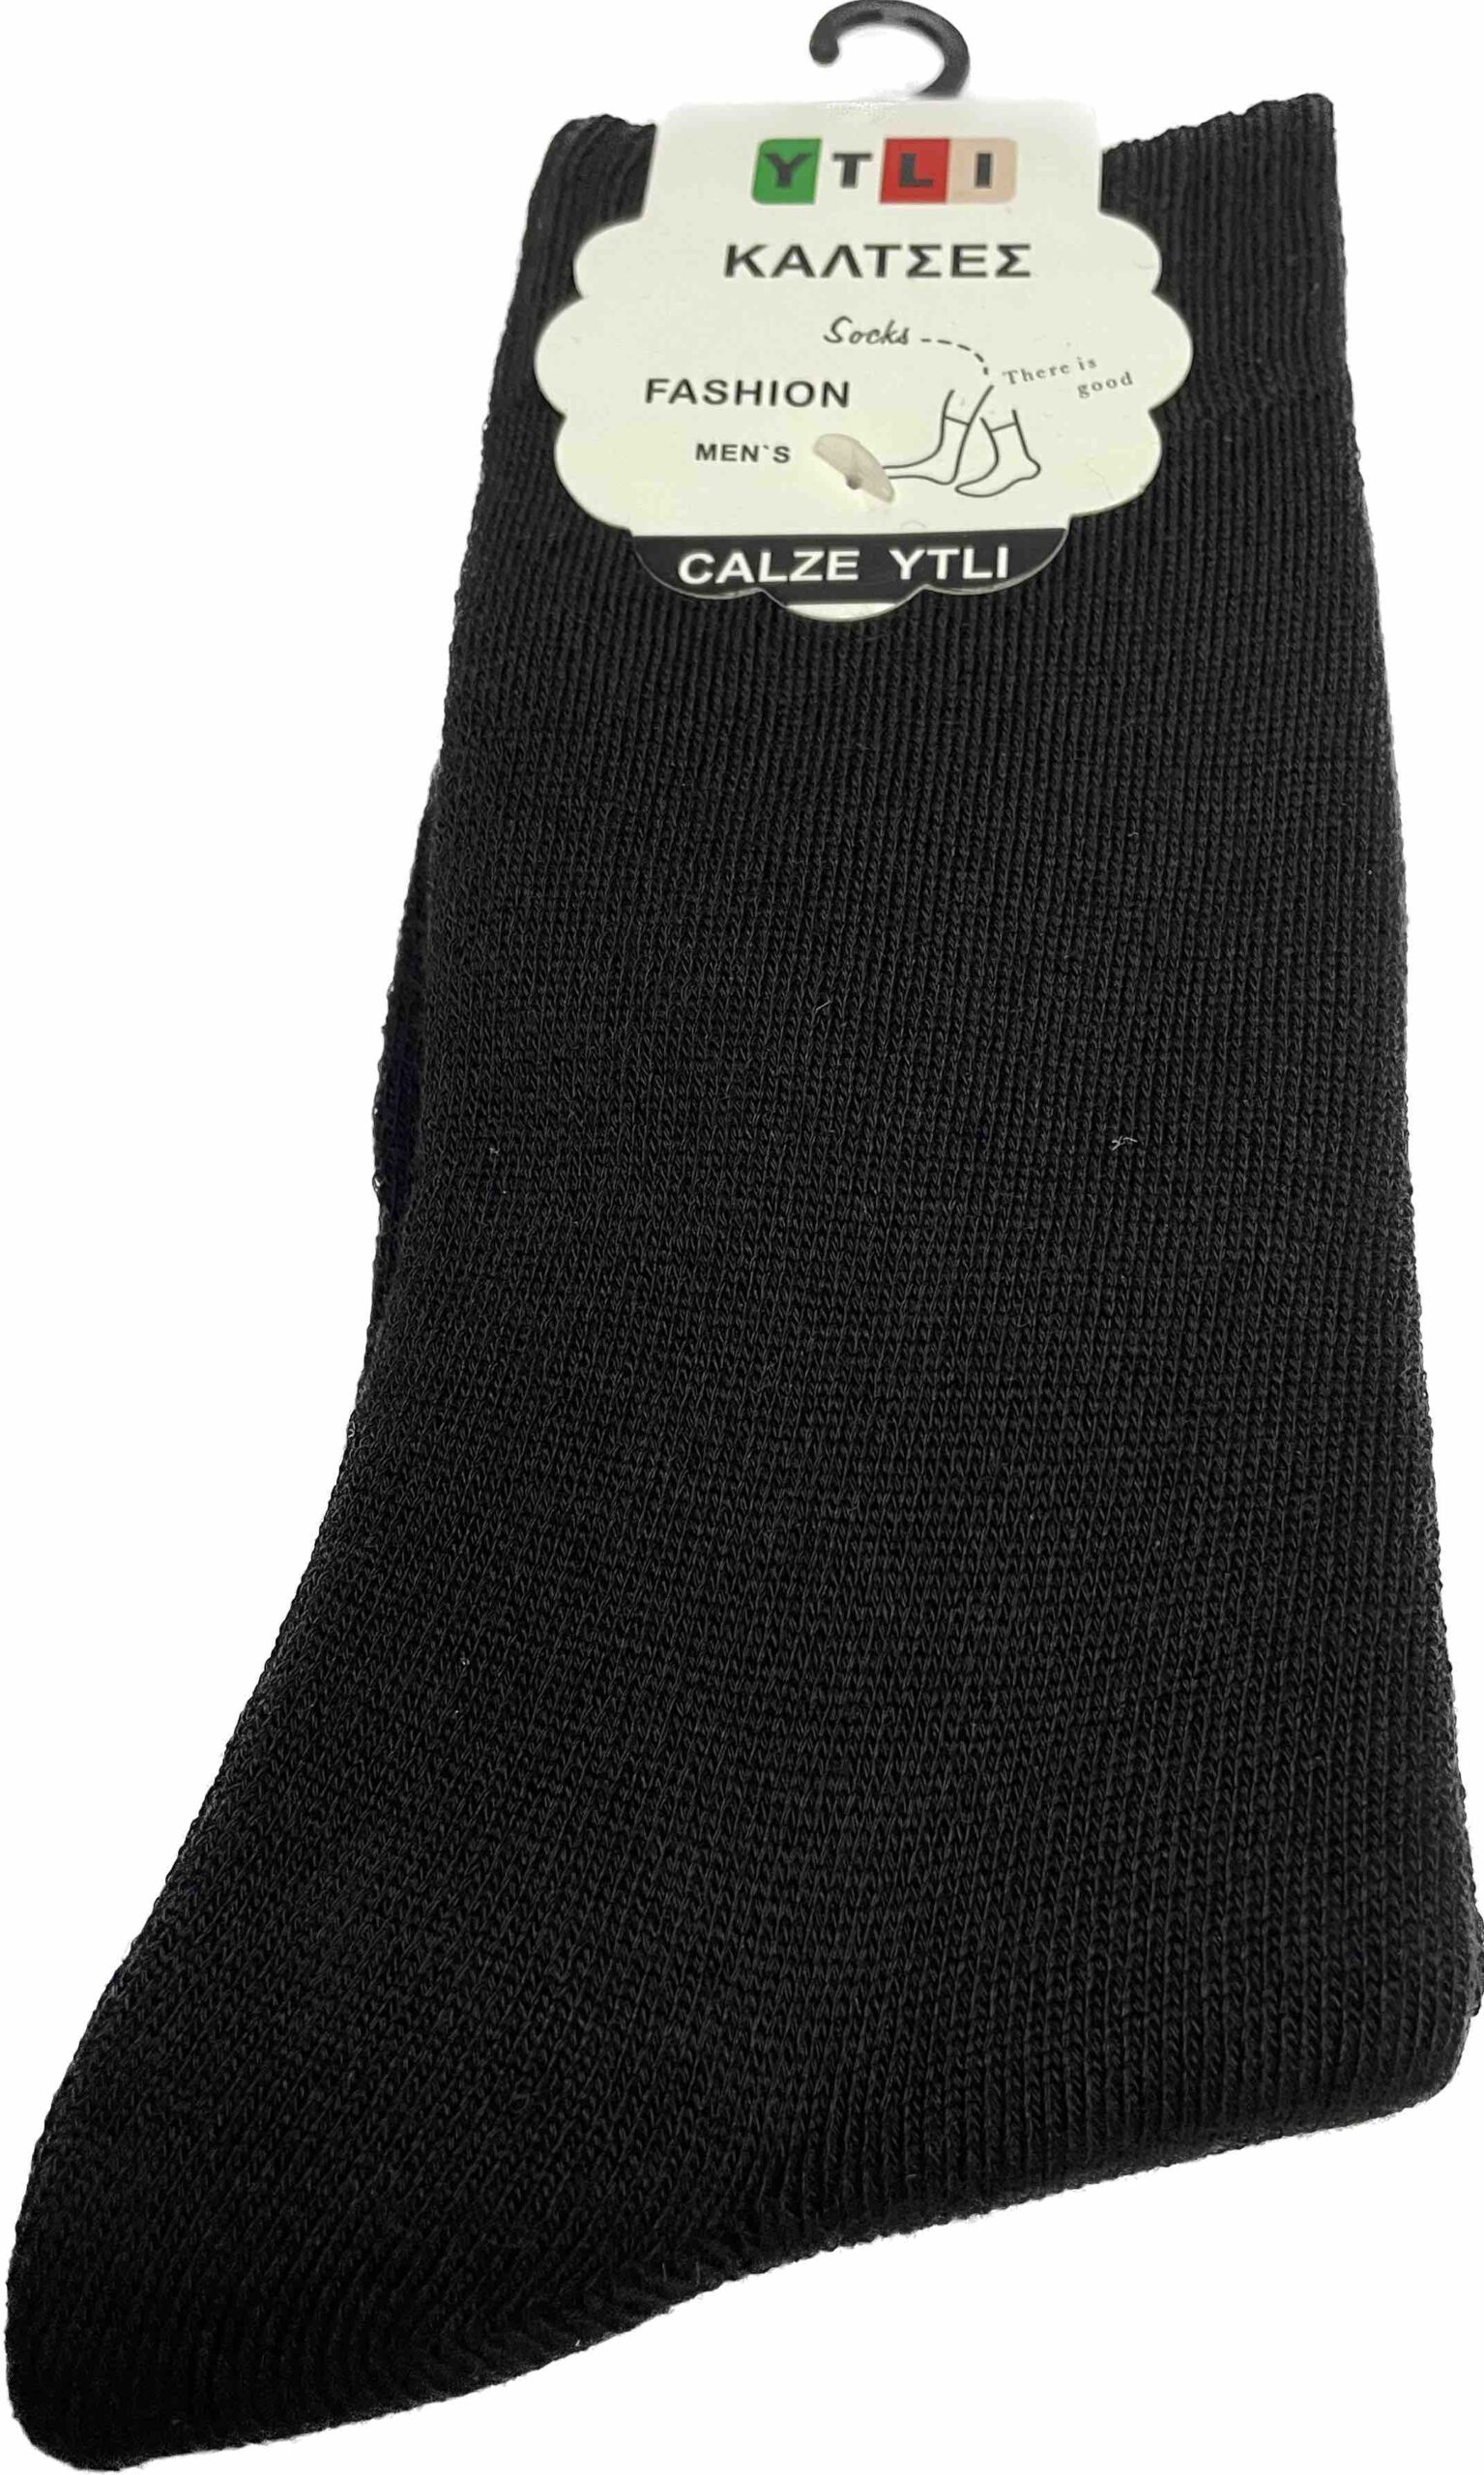 Κάλτσες σε χρώμα μαύρο , άσπρο 95 % βαμβάκι 5 % ελαστινη μέγεθος 40-46 no E1114